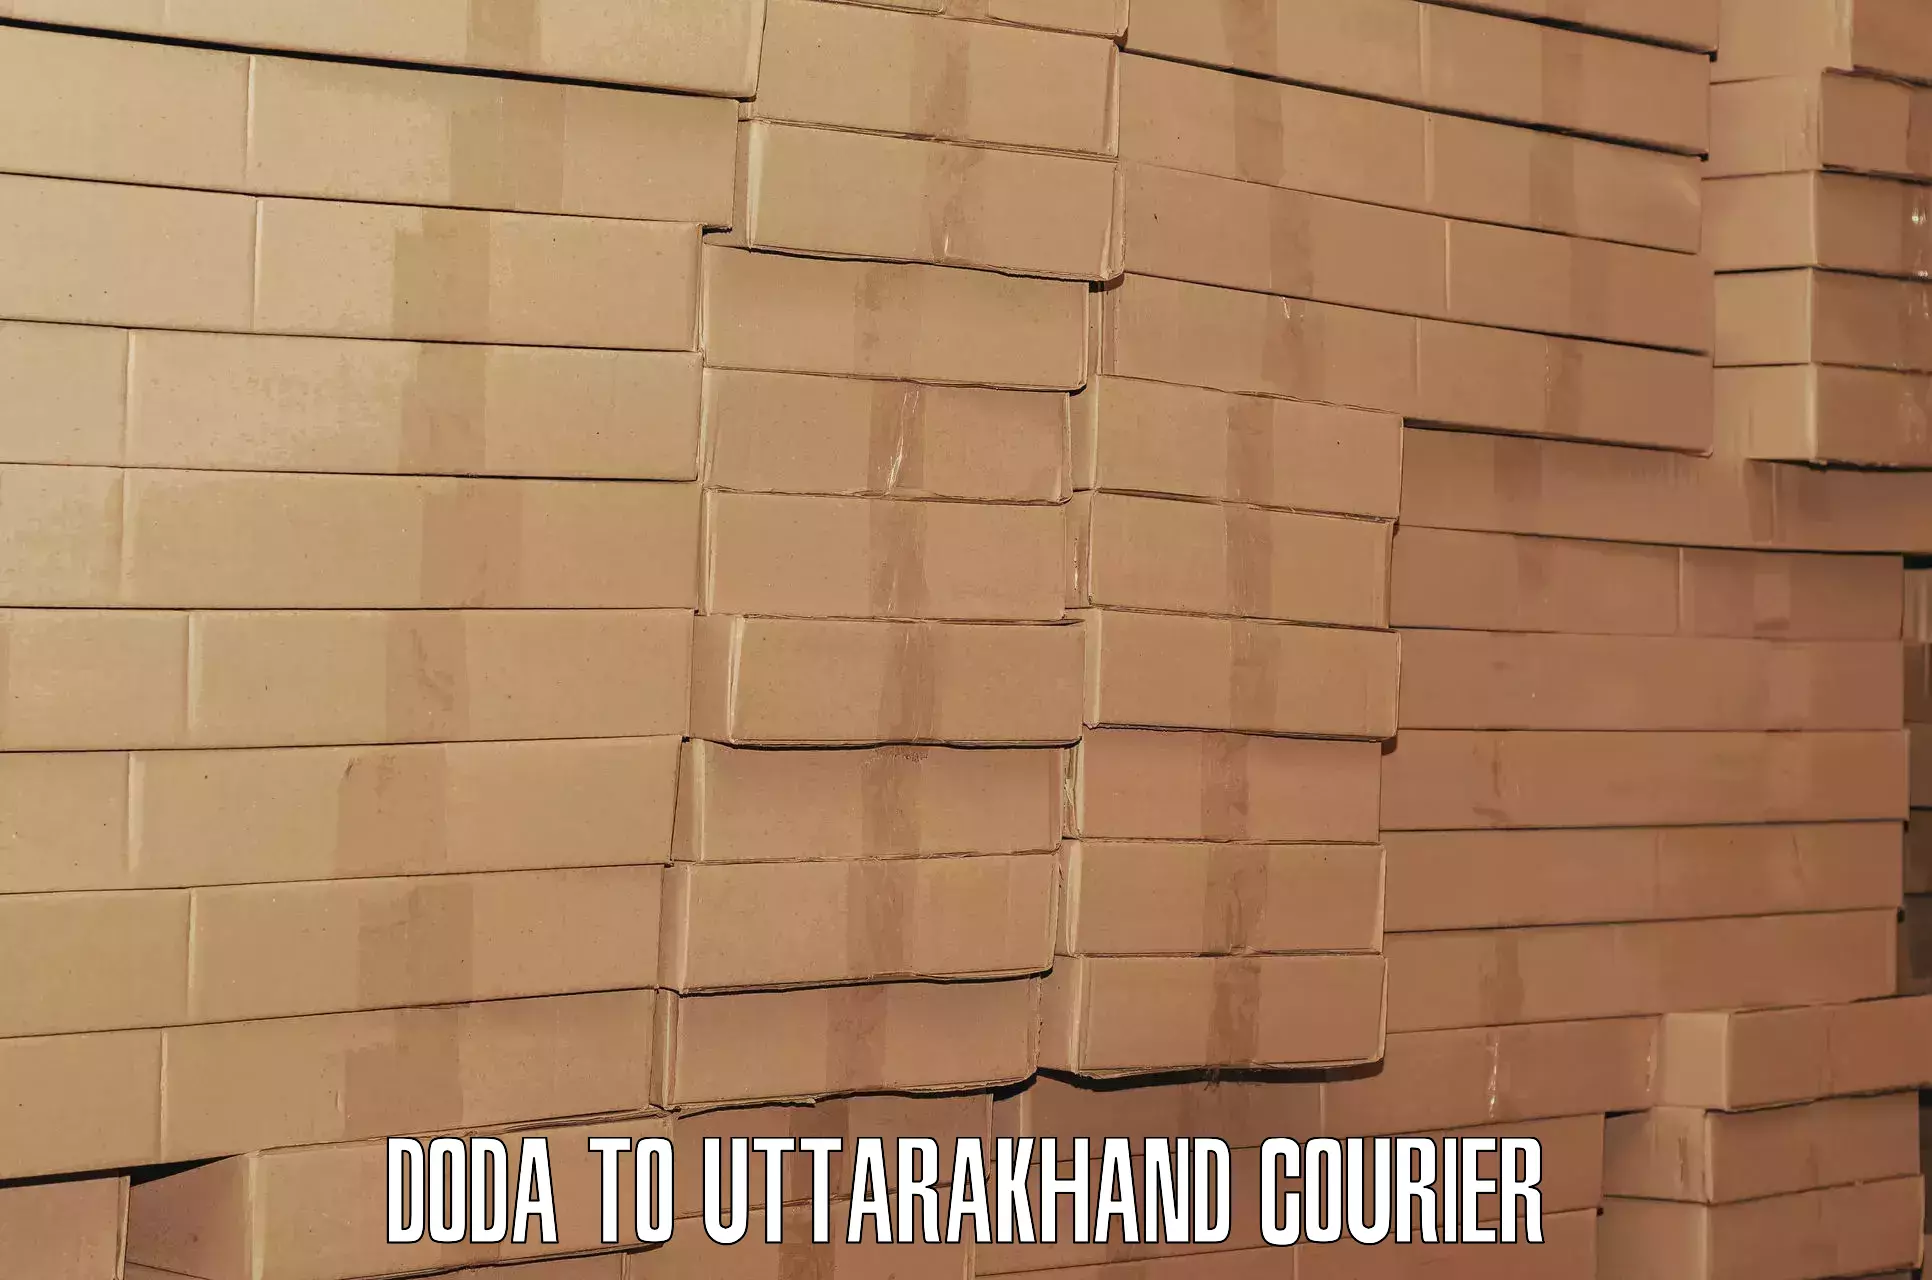 Luggage transport consulting Doda to Paithani